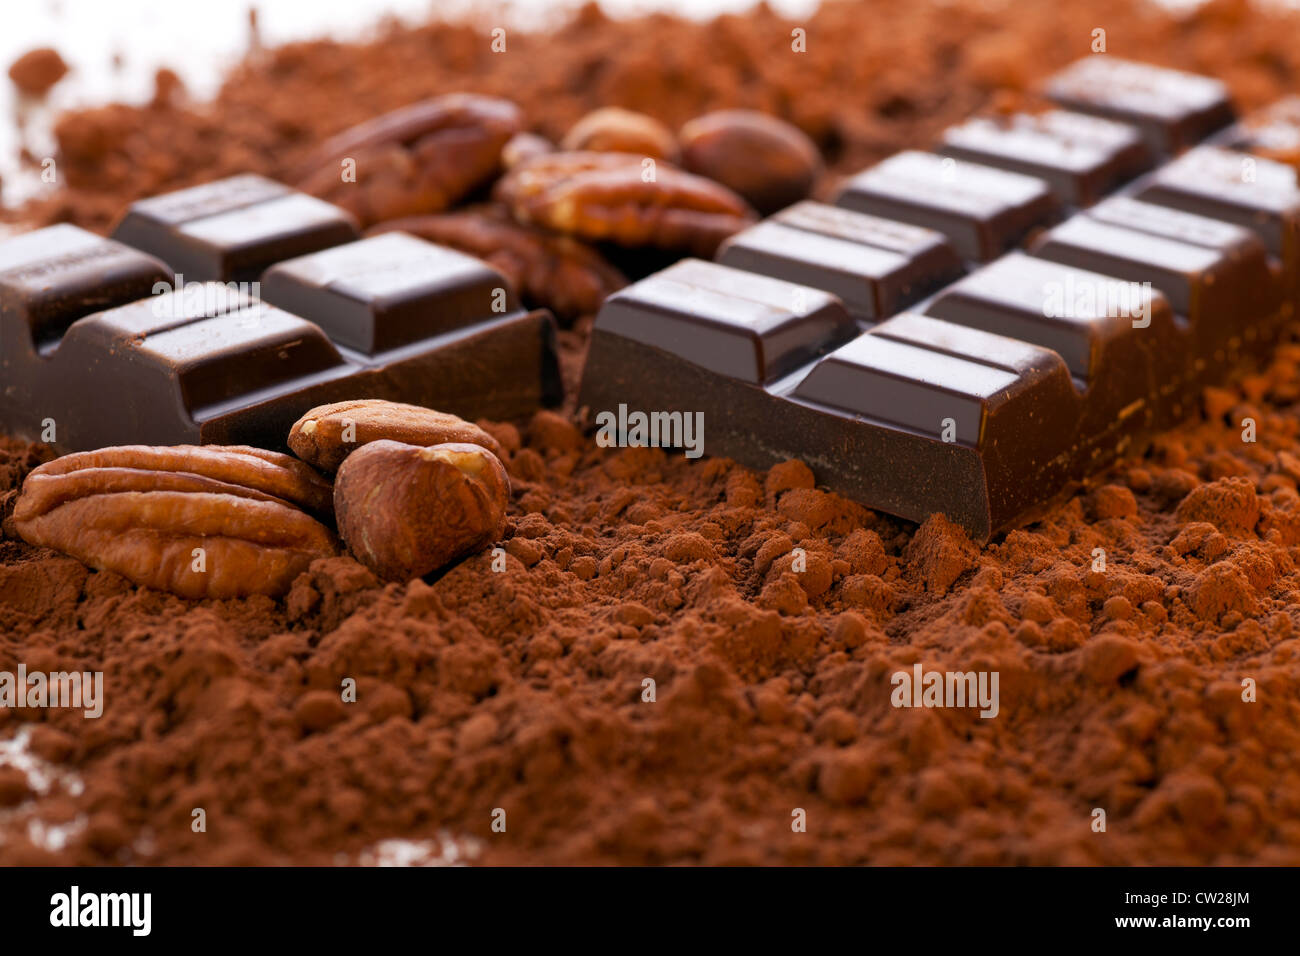 Schokoriegel, aufgeteilt in zwei Hälften mit Kakaopulver und Nüssen. Stockfoto